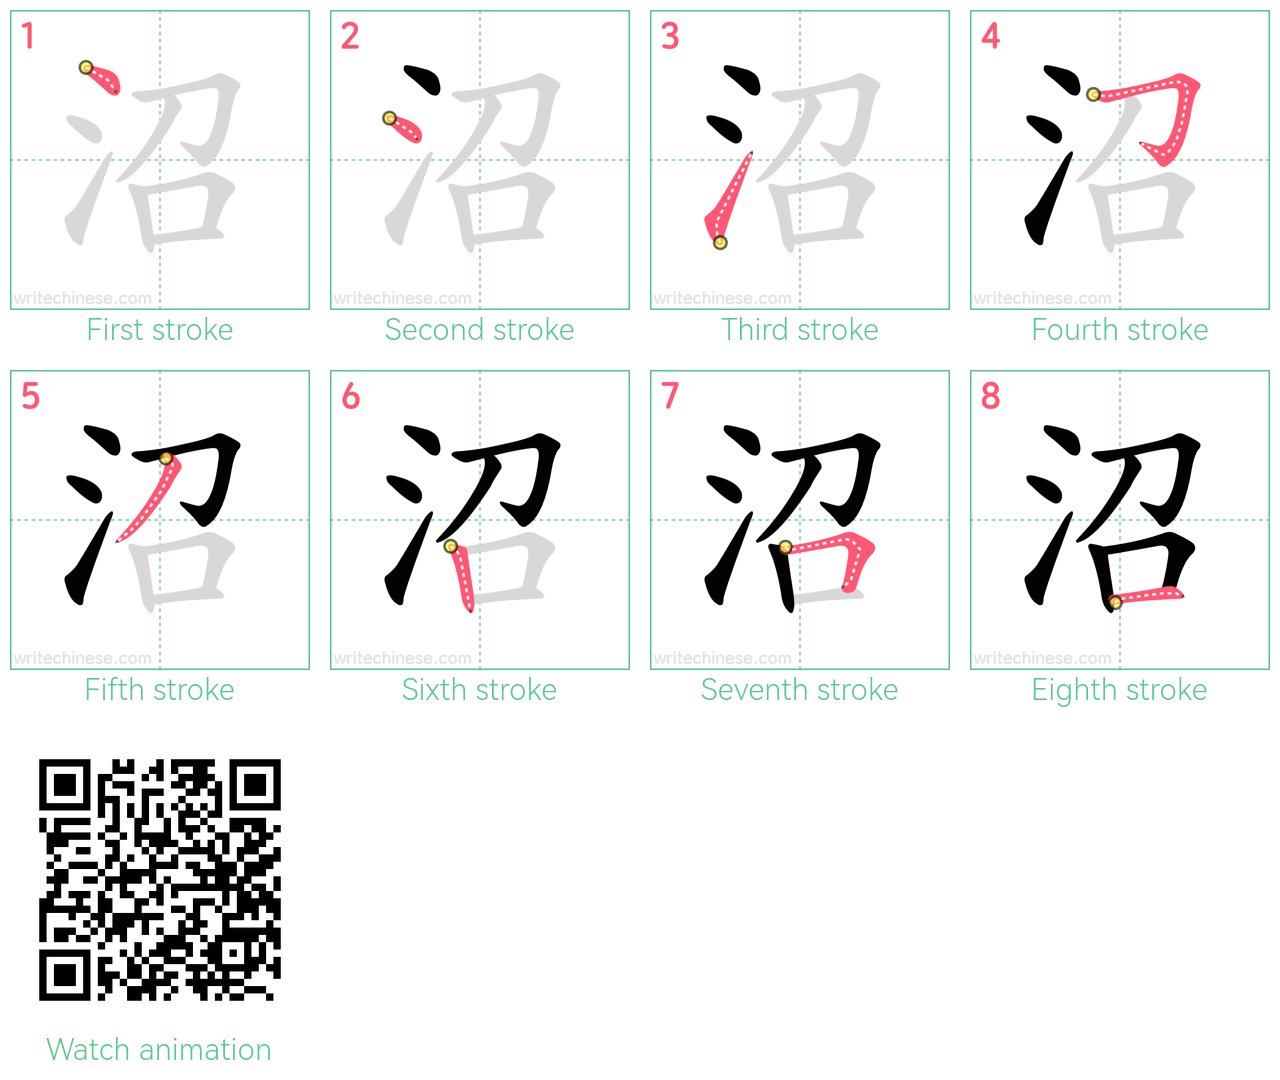 沼 step-by-step stroke order diagrams